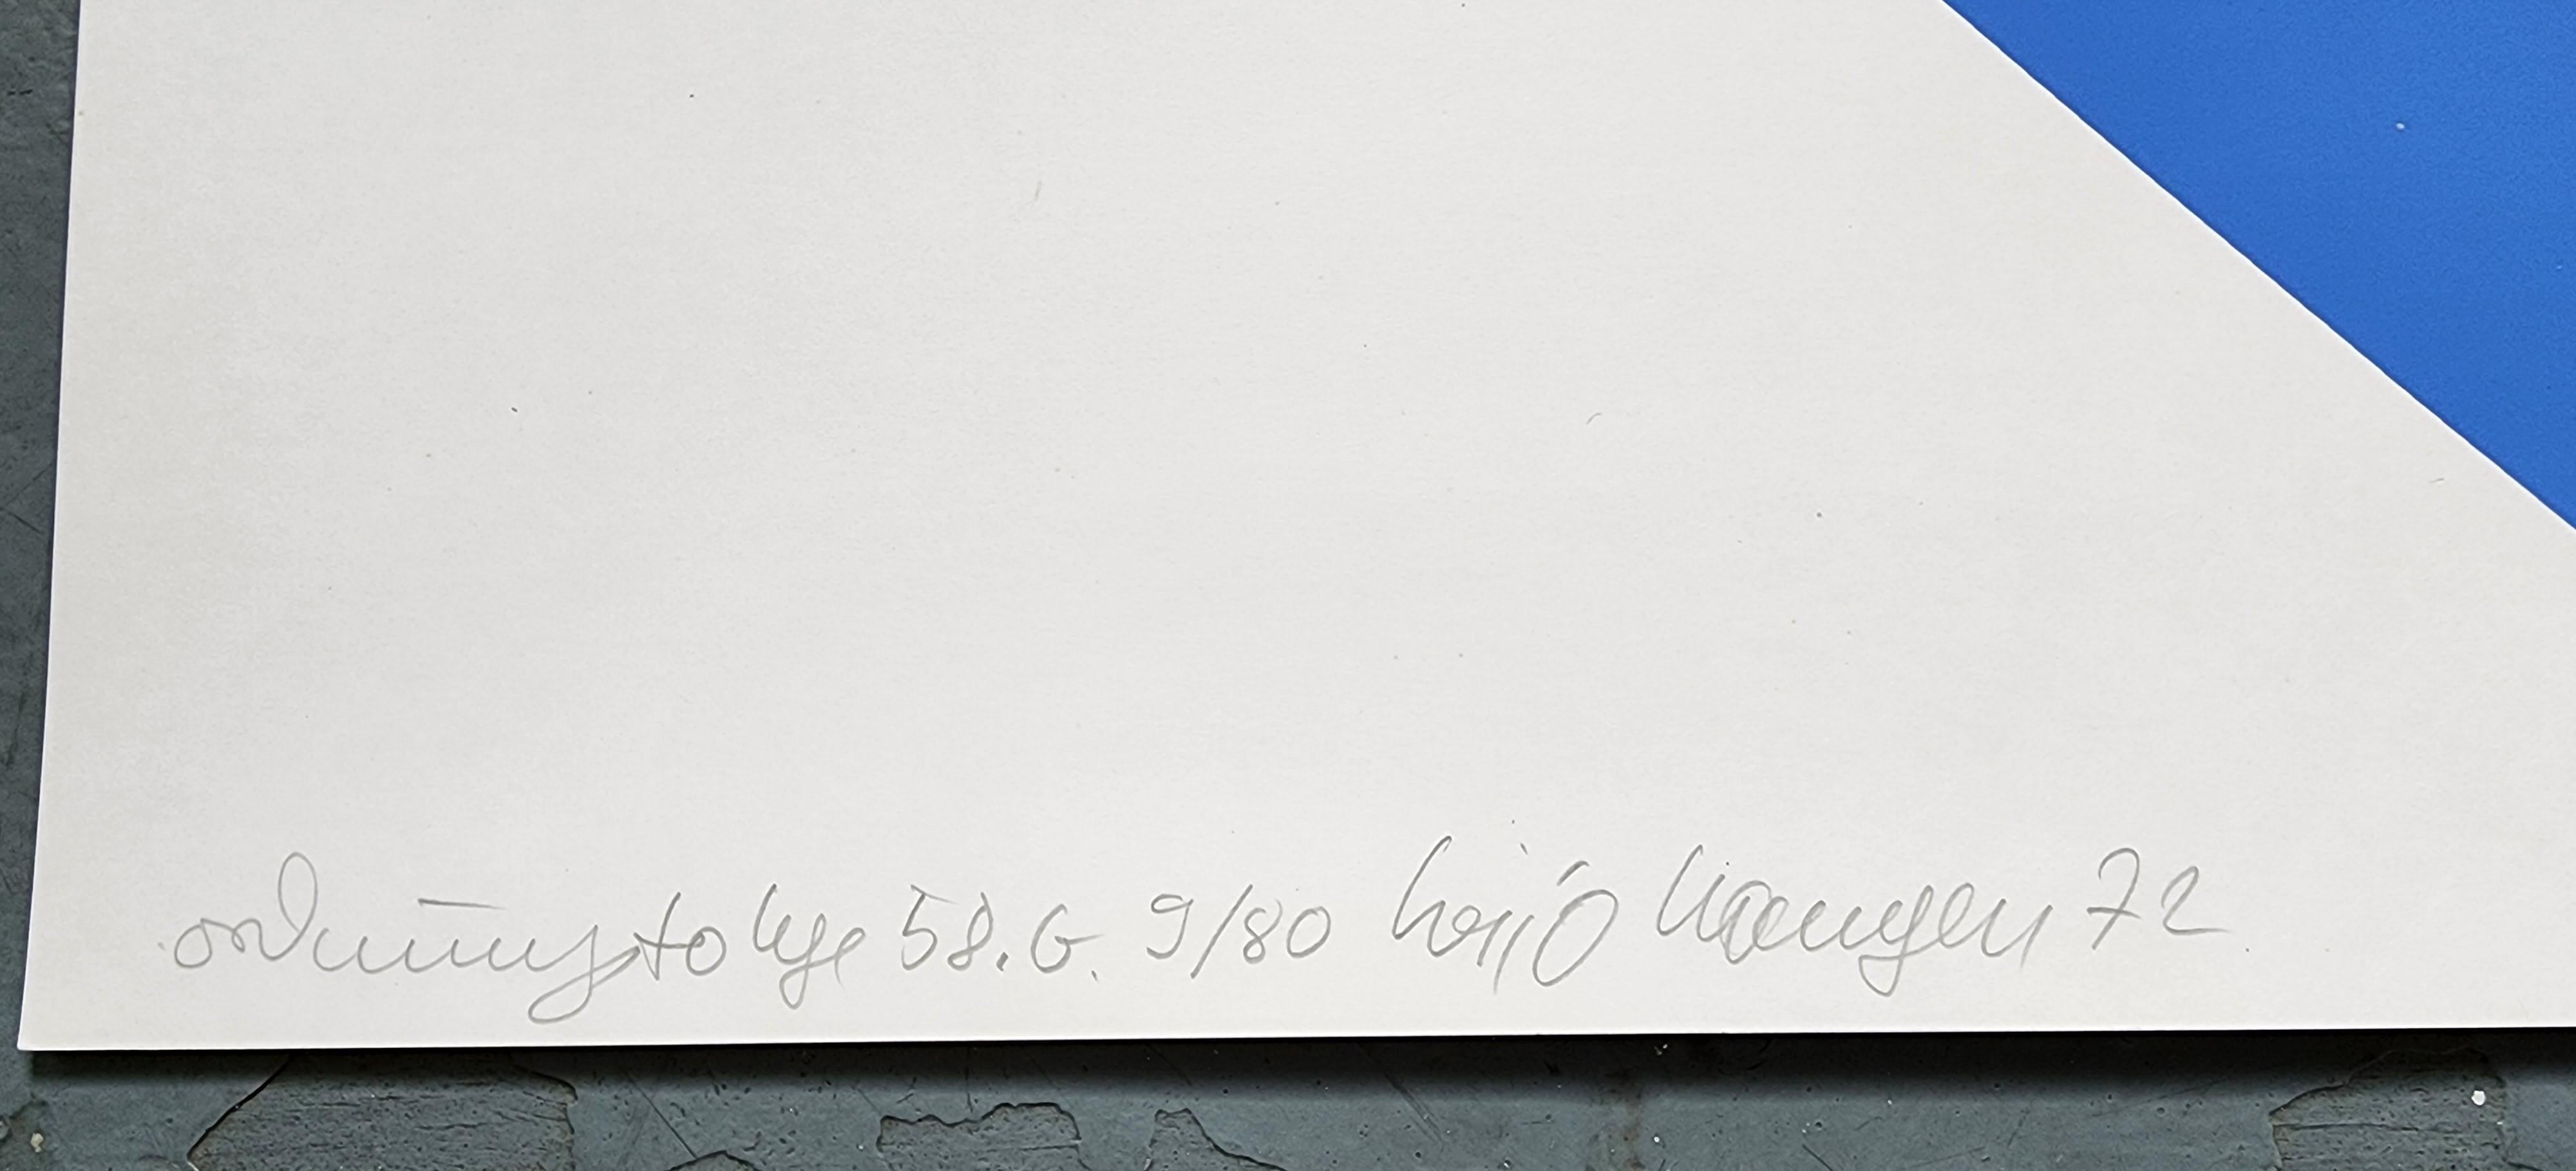 Hajo Hangen
Bestellnummer 58.G (Ordnungsfolge 58.G)
Farbe Siebdruck
Jahr: 1972
Signiert, nummeriert, datiert und betitelt von Hand
Auflage: 80
Größe: 24,0×16,9 Zoll auf 27,6×19,7 Zoll 
COA bereitgestellt 
Ref.: 924802-1176

Heijo Hangen (geboren am